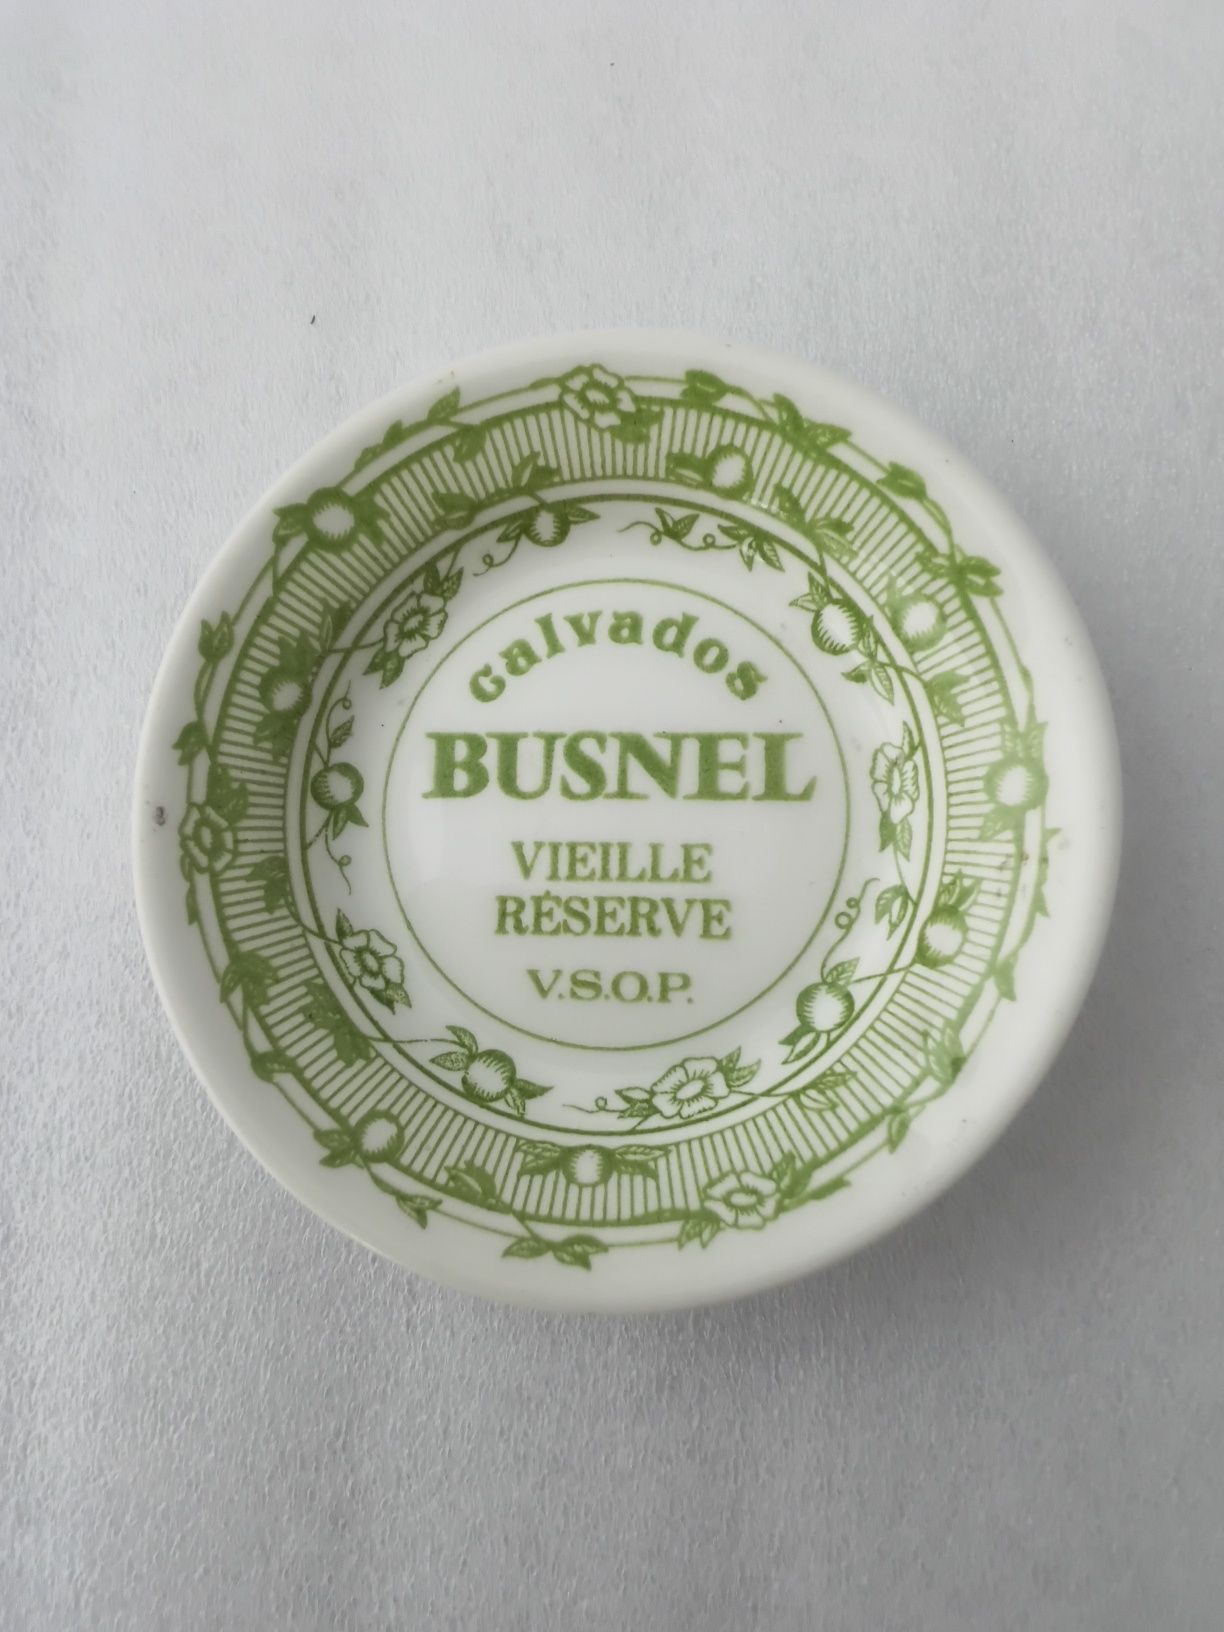 Reklamowa mała miseczka, podstawek Calvados Busnel